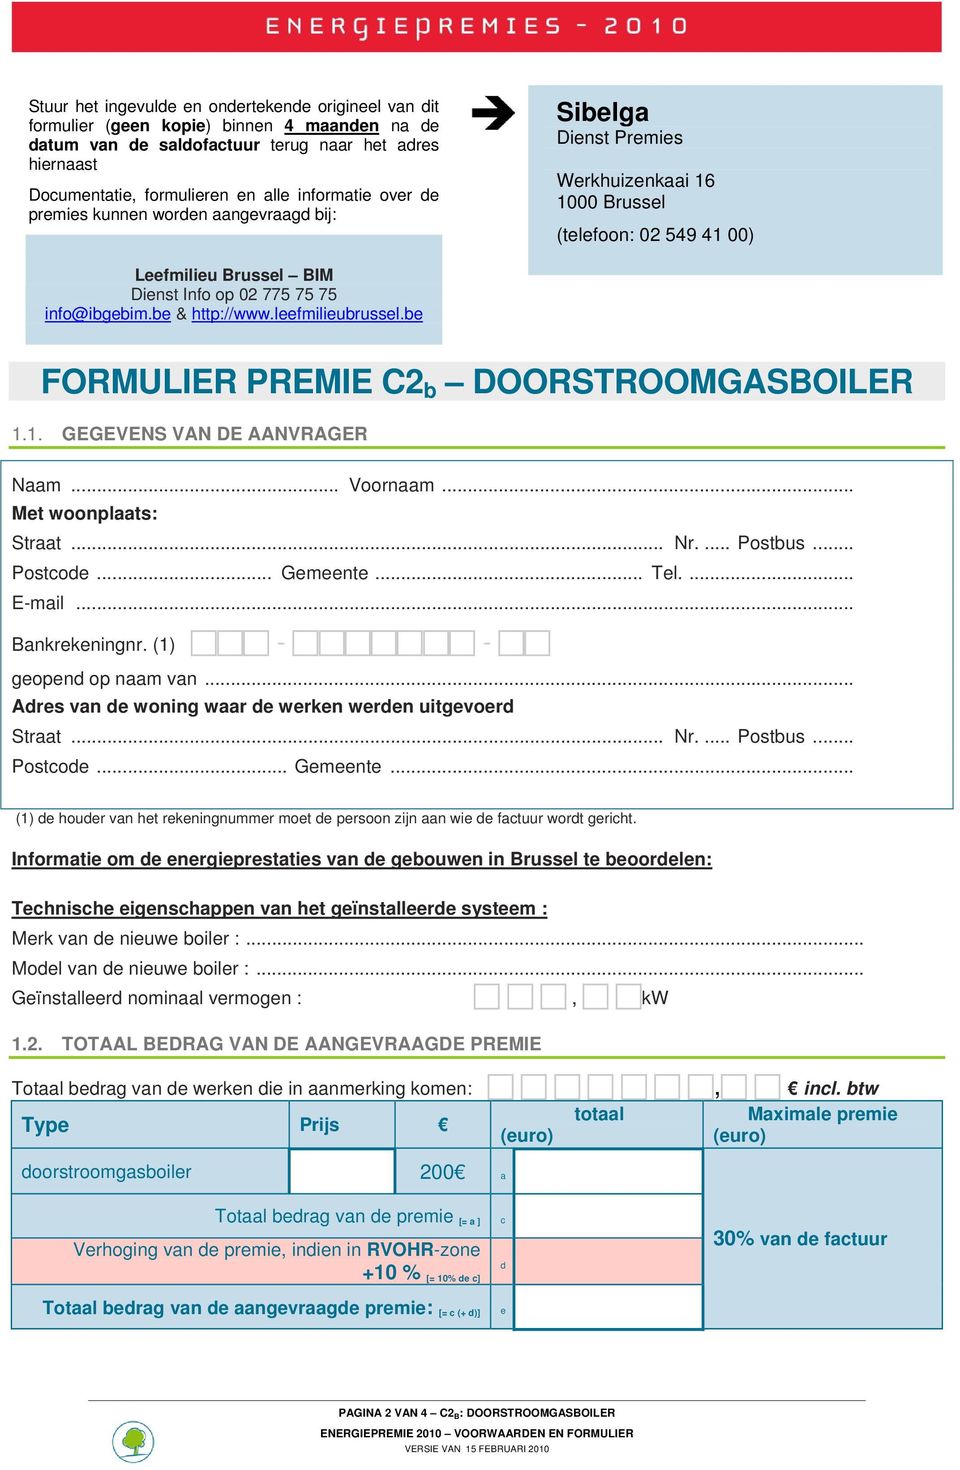 info@ibgebim.be & http://www.leefmilieubrussel.be FORMULIER PREMIE C2 b DOORSTROOMGASBOILER 1.1. GEGEVENS VAN DE AANVRAGER Naam... Voornaam... Met woonplaats: Straat... Nr.... Postbus... Postcode.